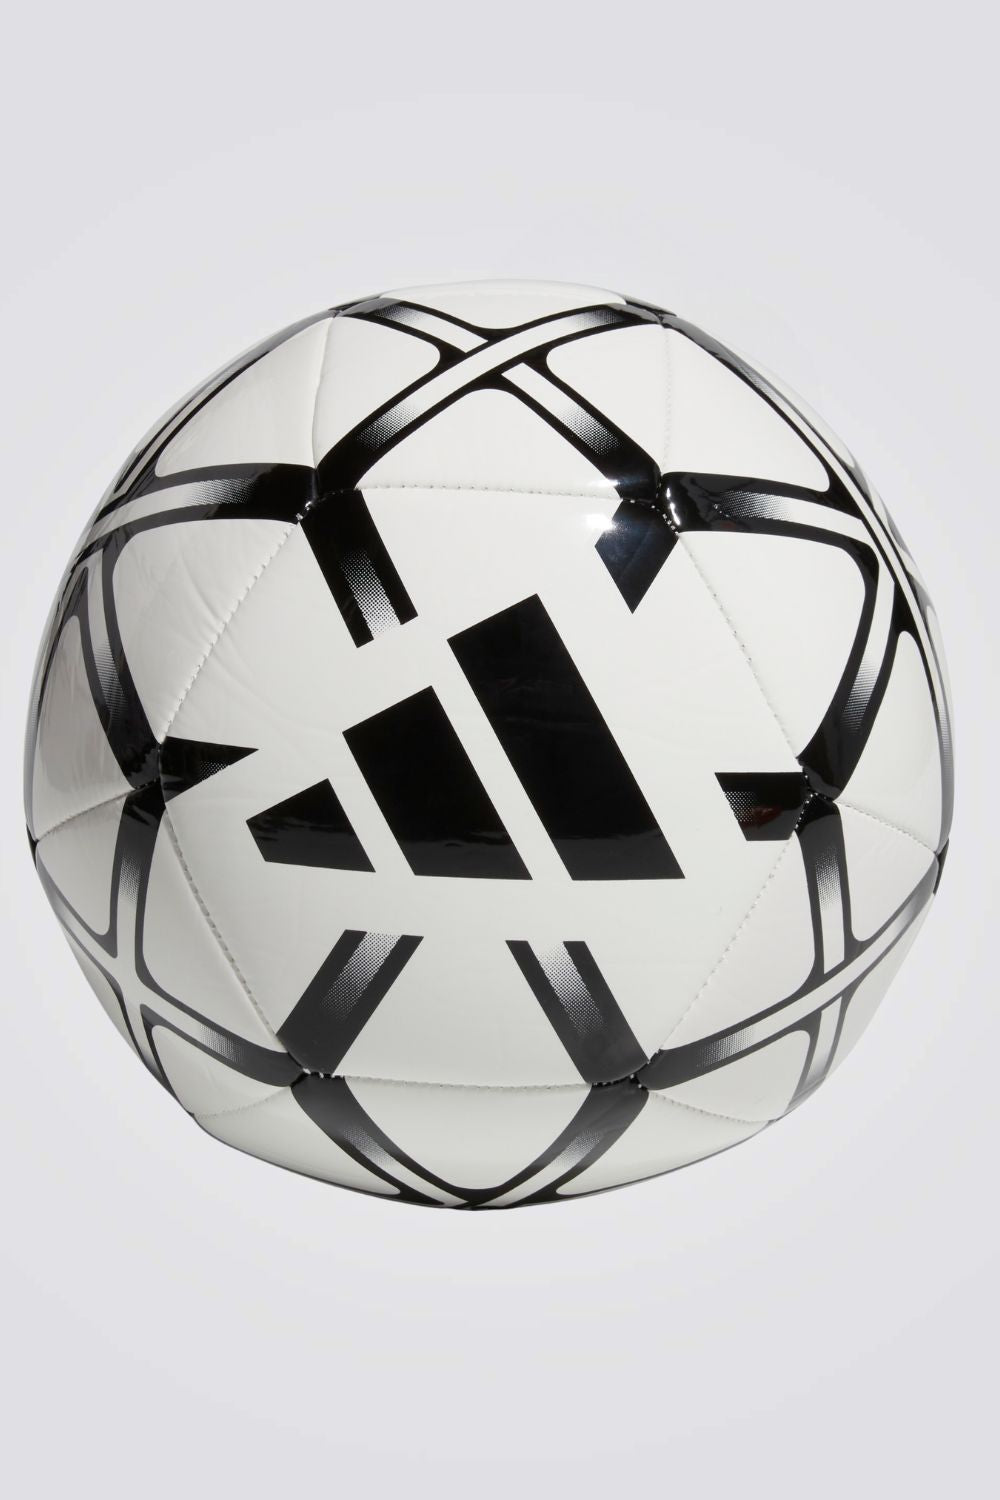 כדורגל מבית המותג ADIDAS עשוי מחומרים חזקים ועמידים שמאפשרים לך לשחק במיטבך מבלי לדאוג לתחזוקה שלו.